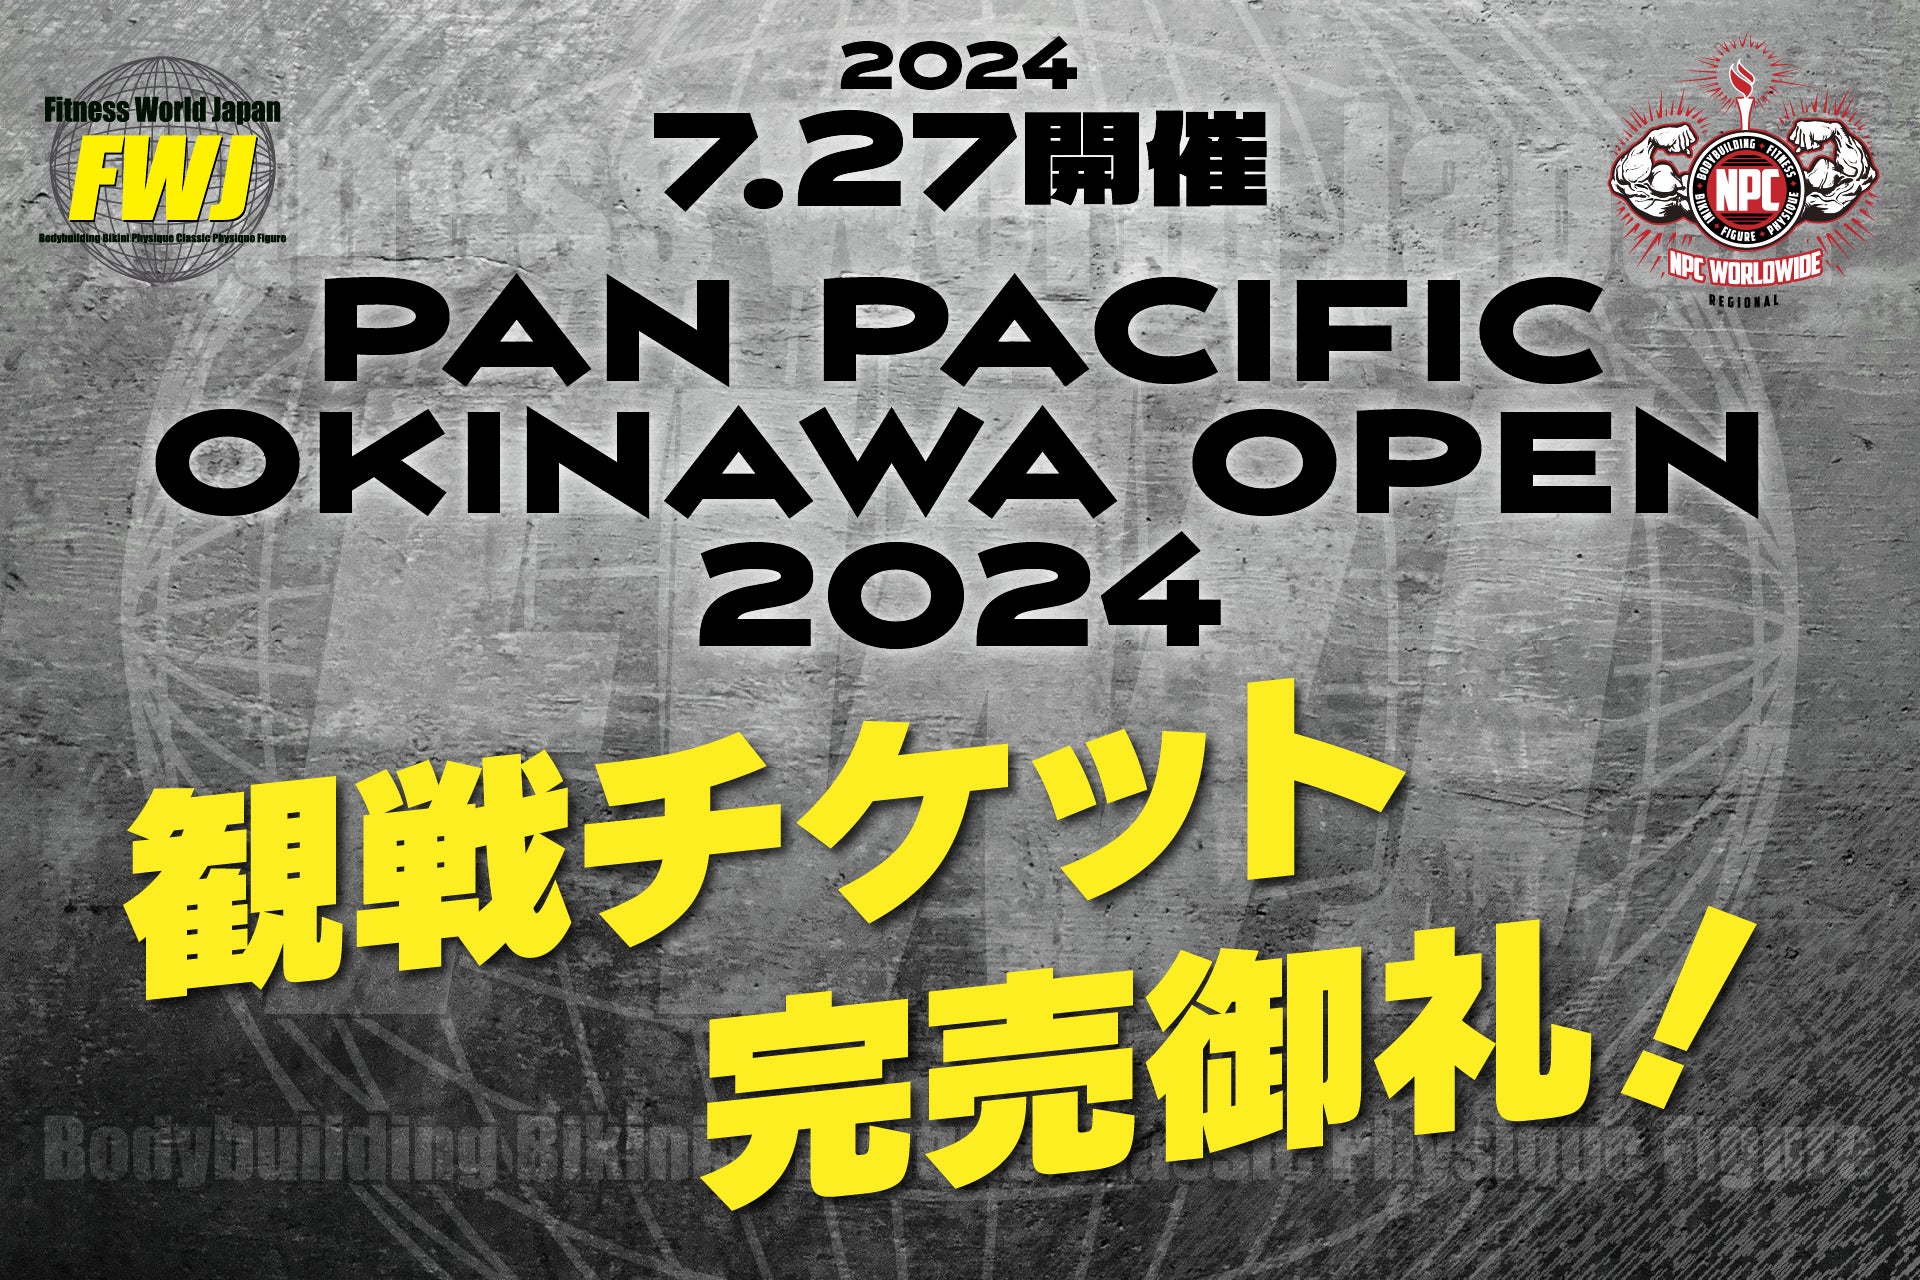 【フィットネス・ボディビル団体 FWJ】7月27日PAN PACIFIC OKINAWA OPEN 2024をかでな文化センターにて開催！